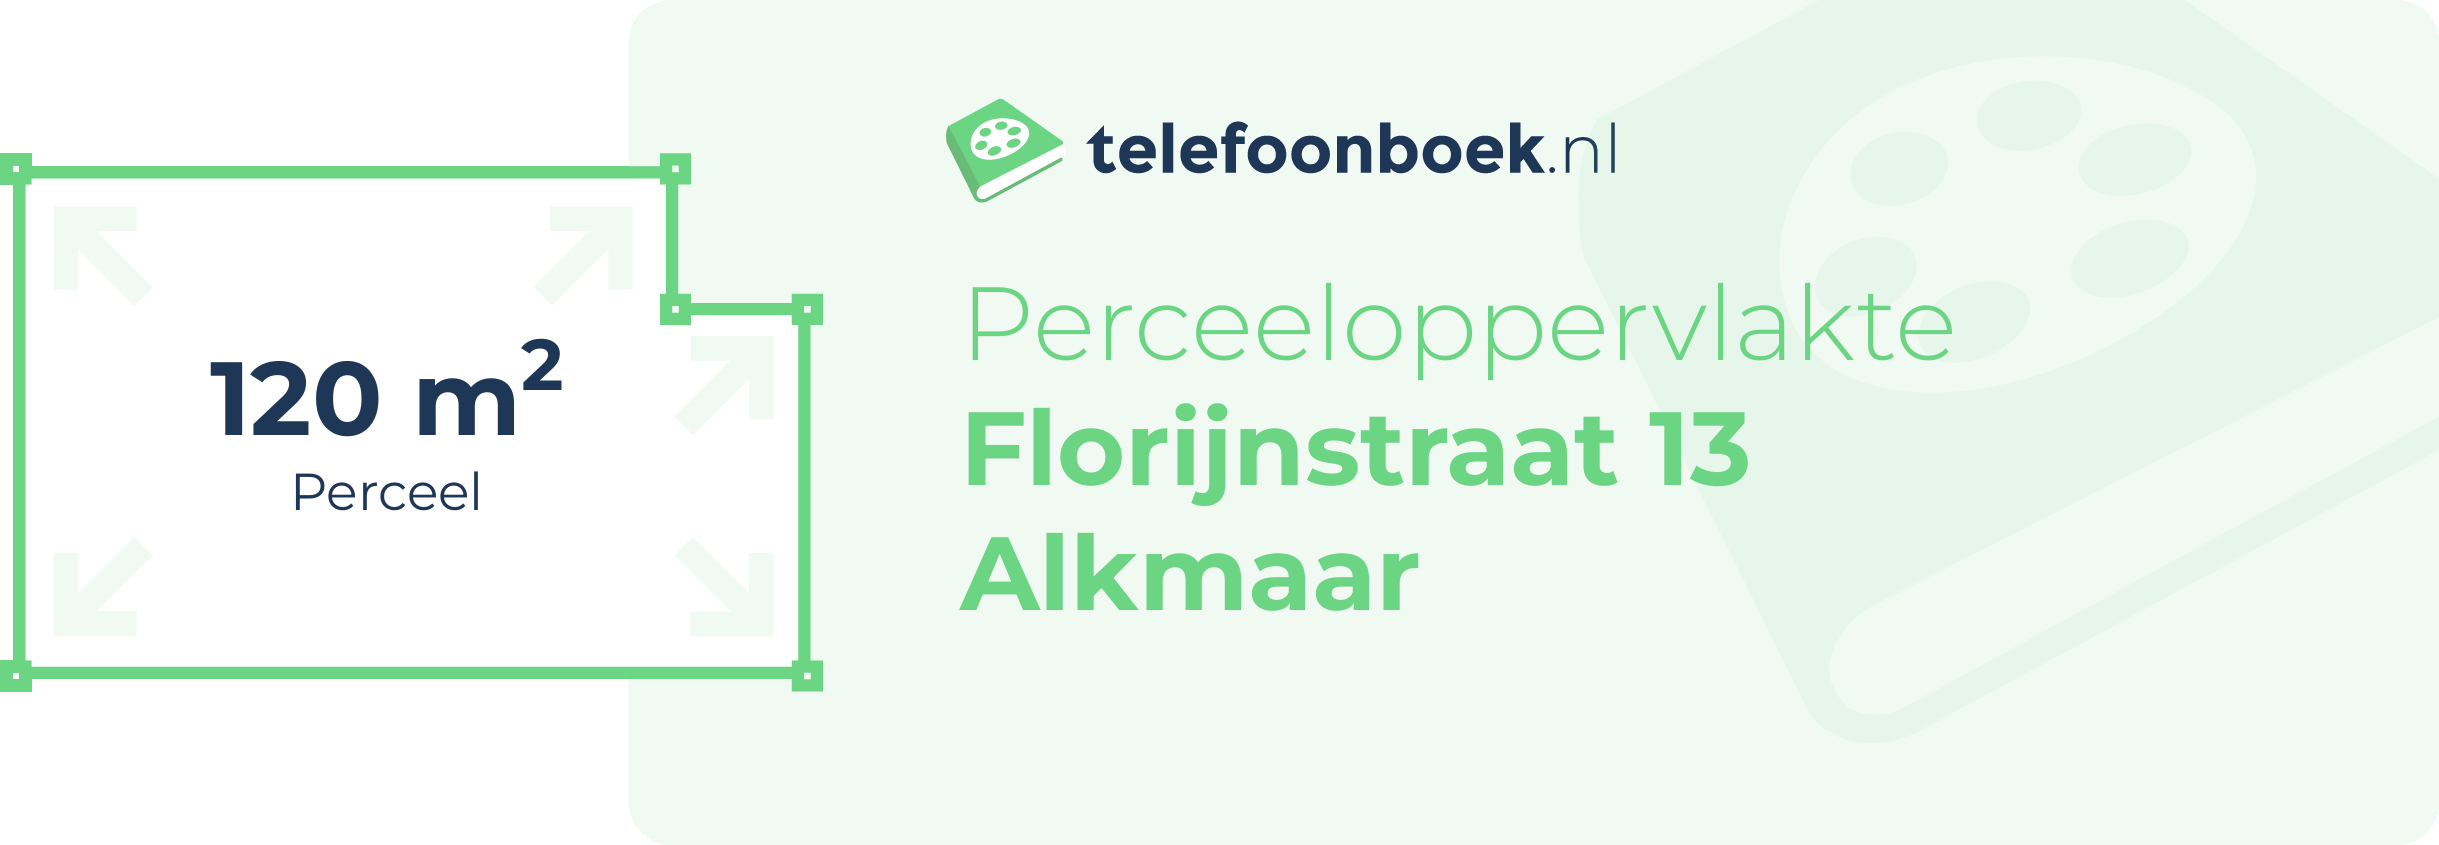 Perceeloppervlakte Florijnstraat 13 Alkmaar